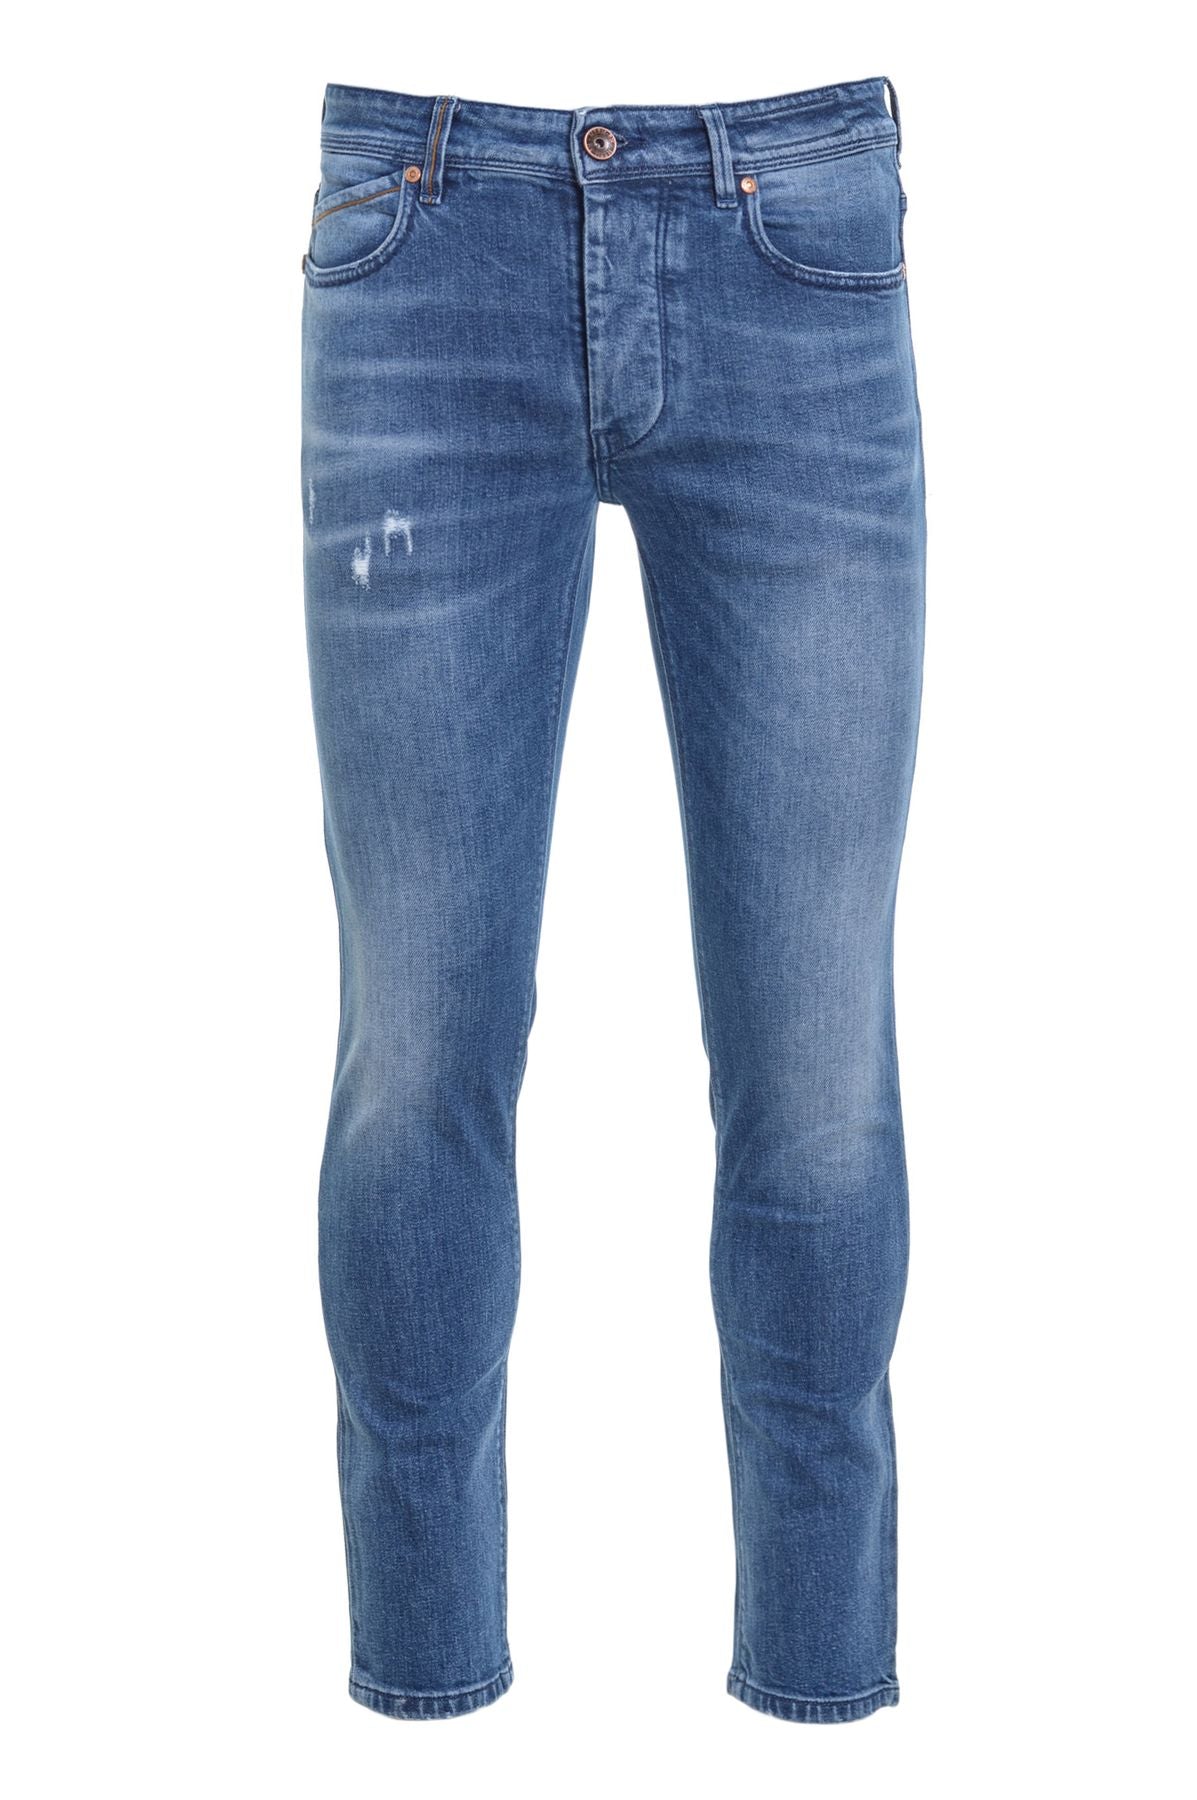 Re-HasH Jeans Autunno/Inverno p015b302658rubensb30